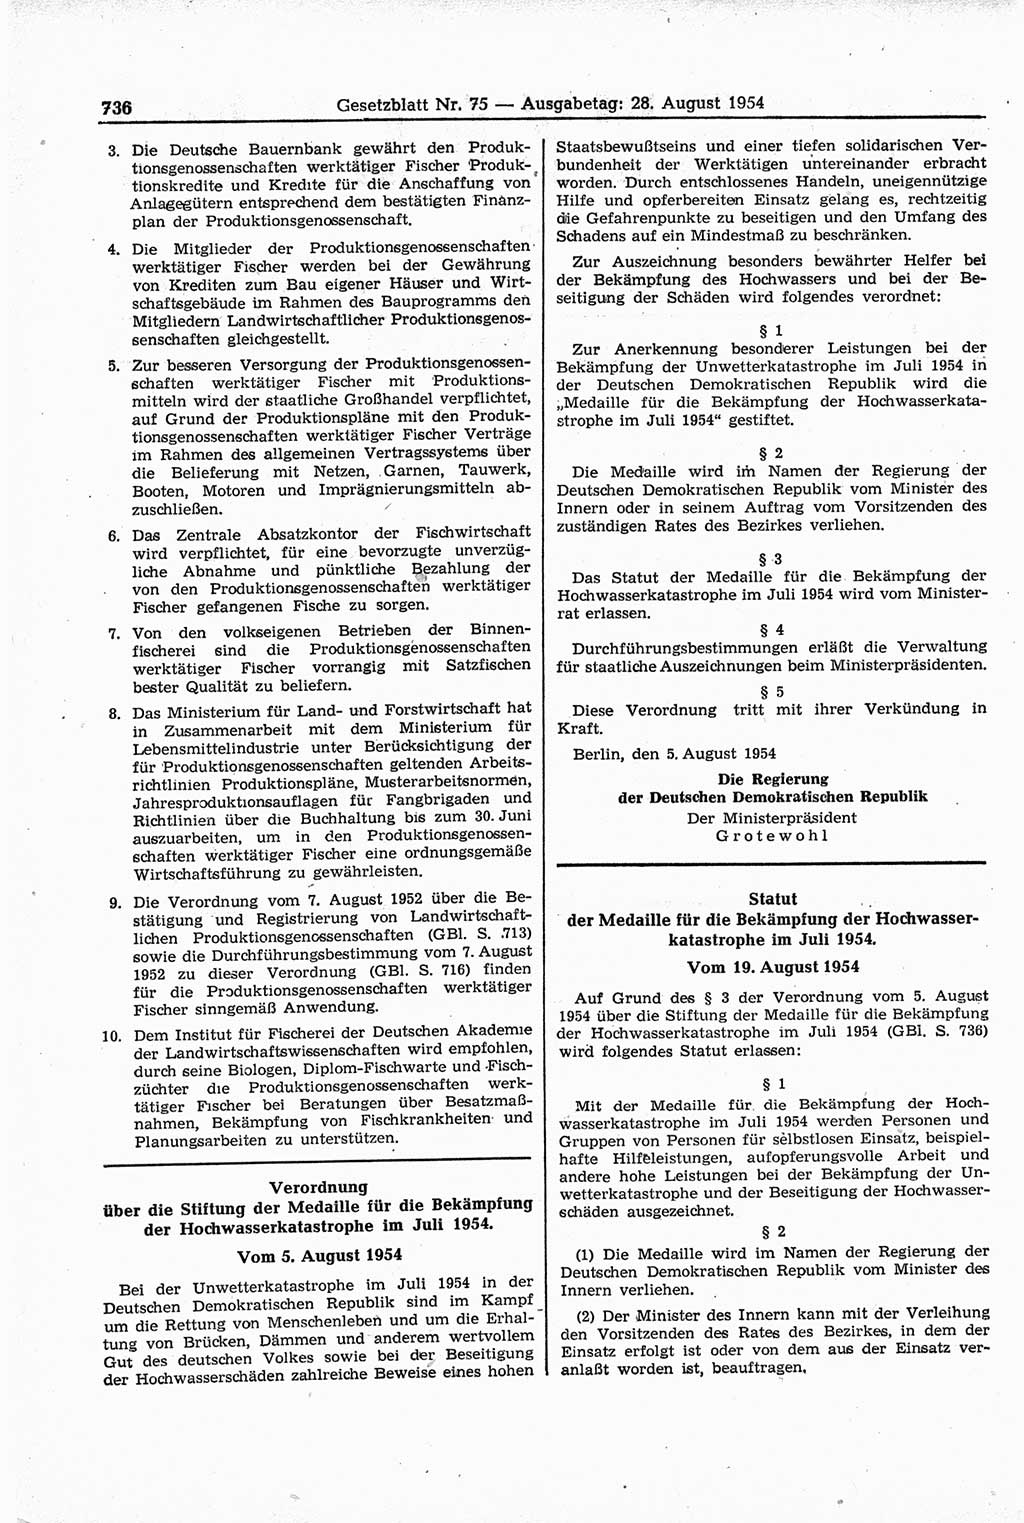 Gesetzblatt (GBl.) der Deutschen Demokratischen Republik (DDR) 1954, Seite 736 (GBl. DDR 1954, S. 736)